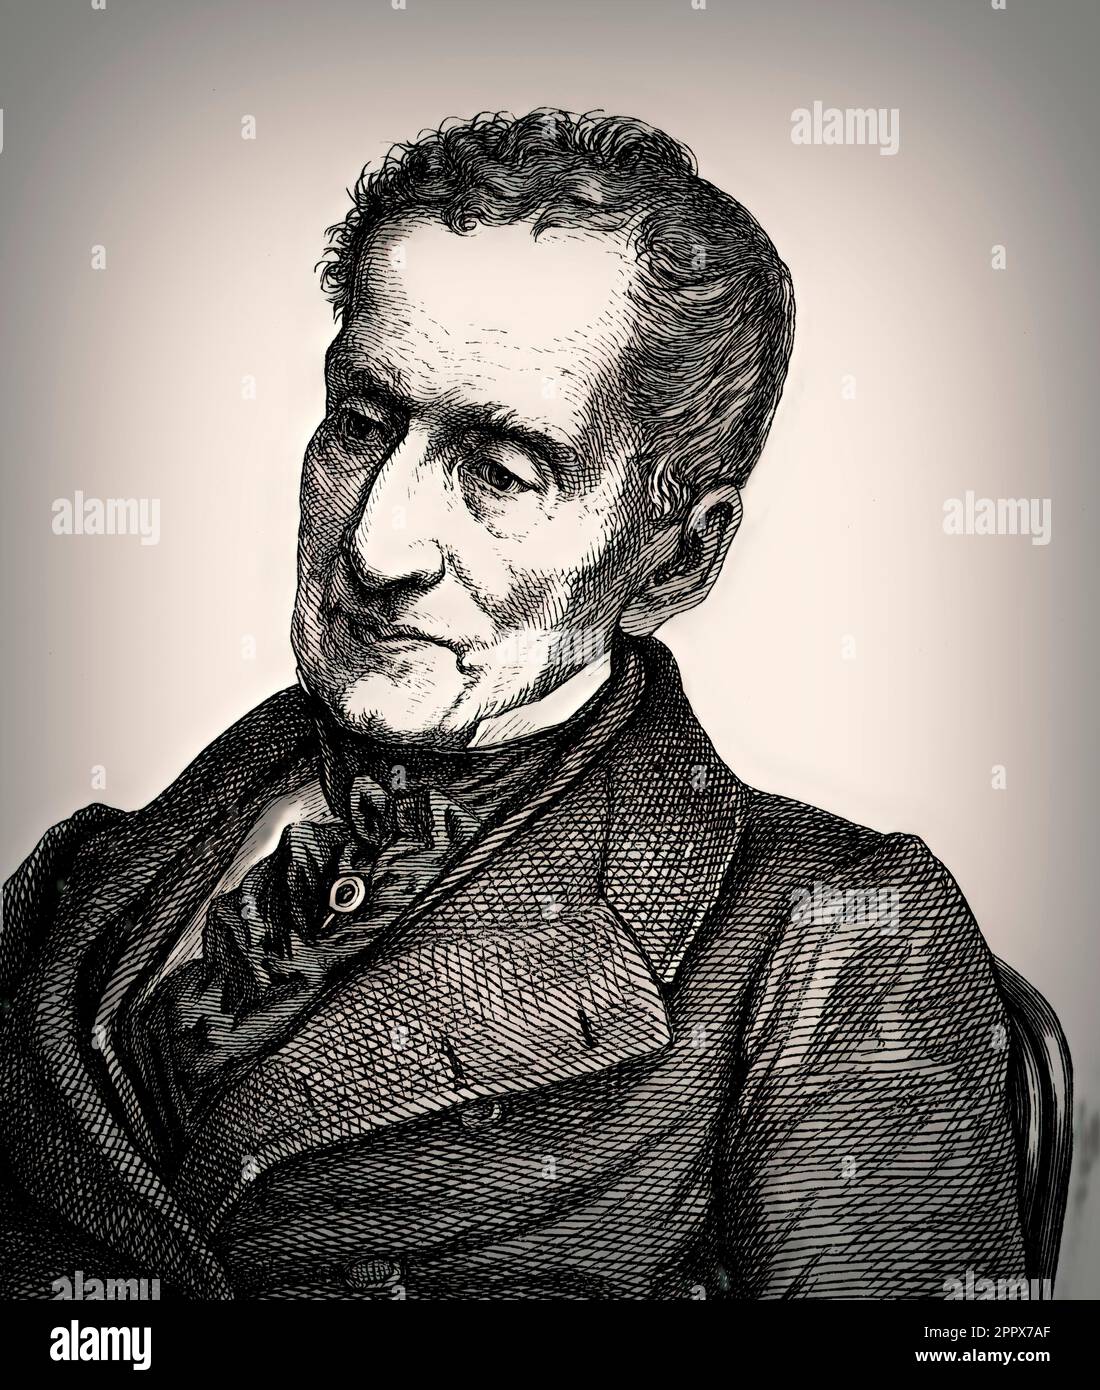 Portrait of Prince Klemens Wenzel von Metternich, 1773-1859, statesman in Imperial Austria, digital edited Stock Photo